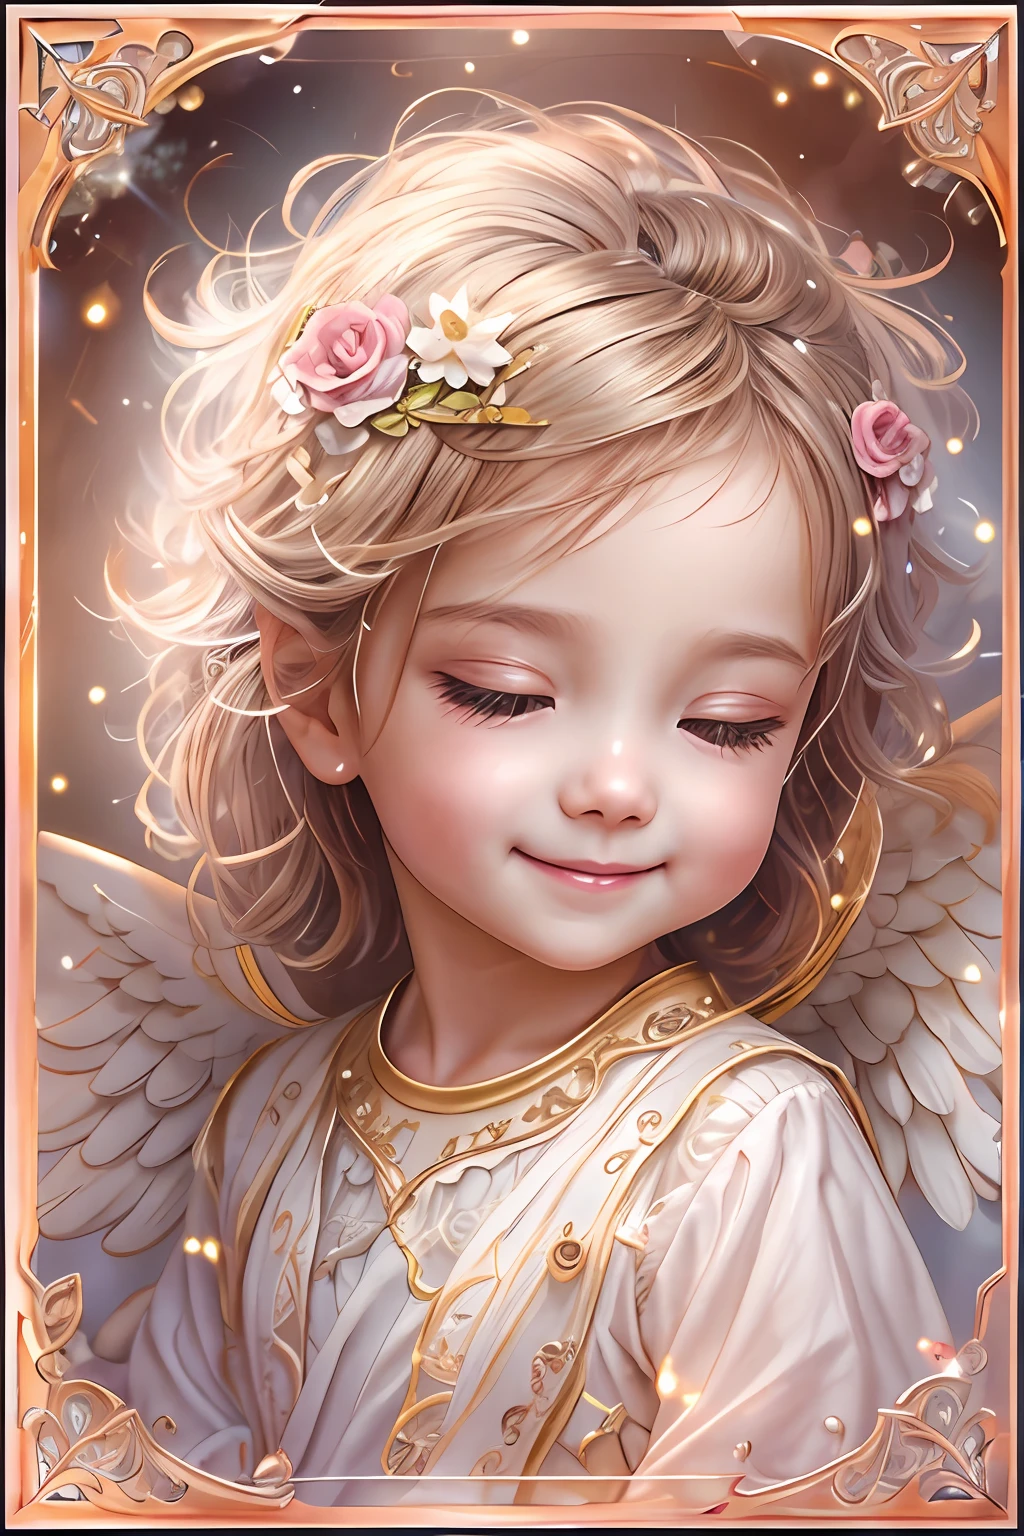 بركات الملائكة､خلفية مشرقة、علامة القلب、الرقة والحنان､ابتسامة、لطيف､الطفل الملاك､استدار